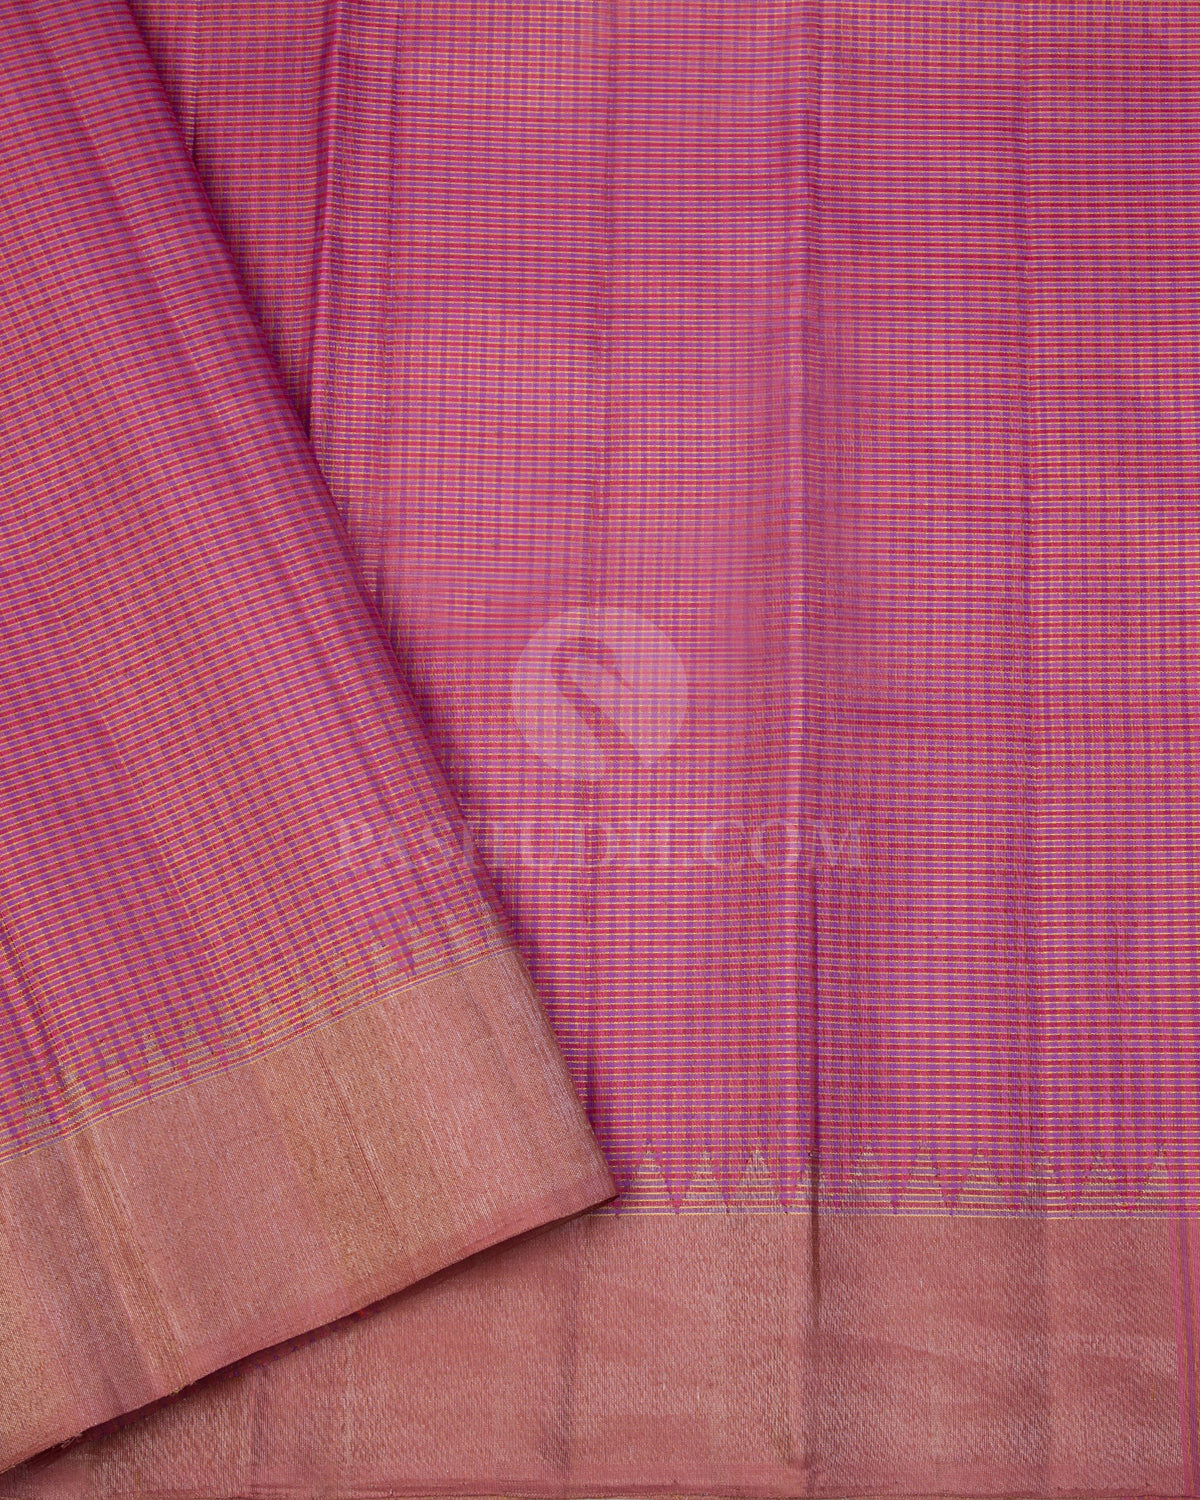 Onion Pink Kanjivaram Silk Saree - S997 - View 3